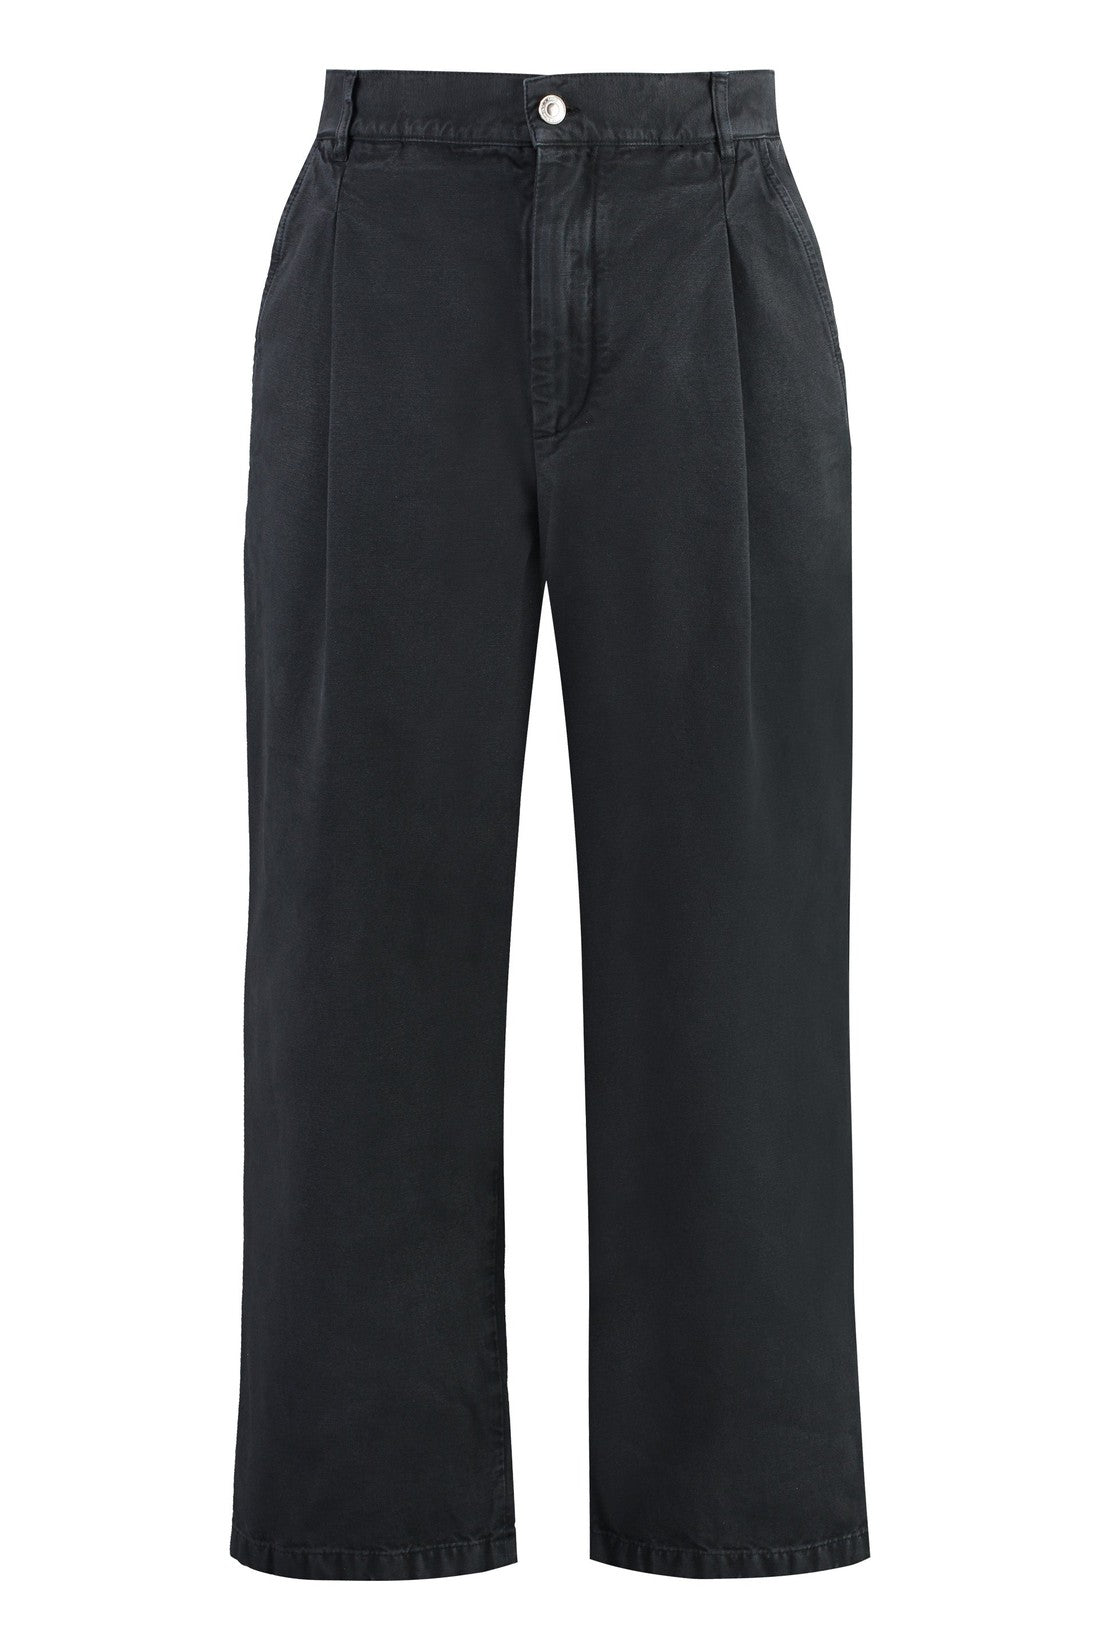 Marant-OUTLET-SALE-Fostin cotton trousers-ARCHIVIST